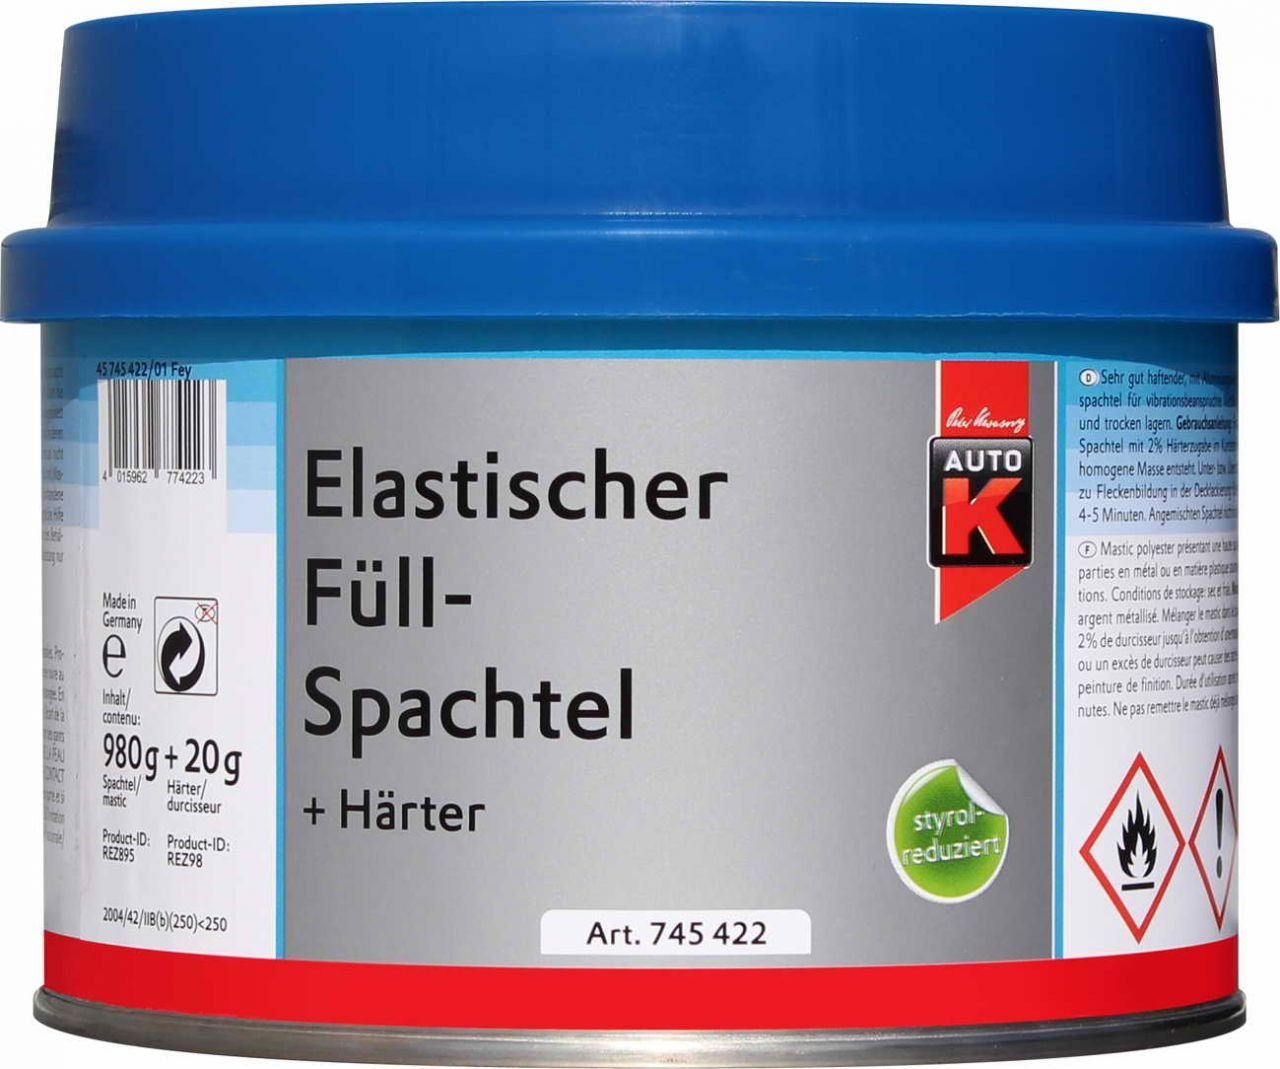 Auto-K Breitspachtel Auto-K Elastischer Füllspachtel + Härter 1000g von Auto-K